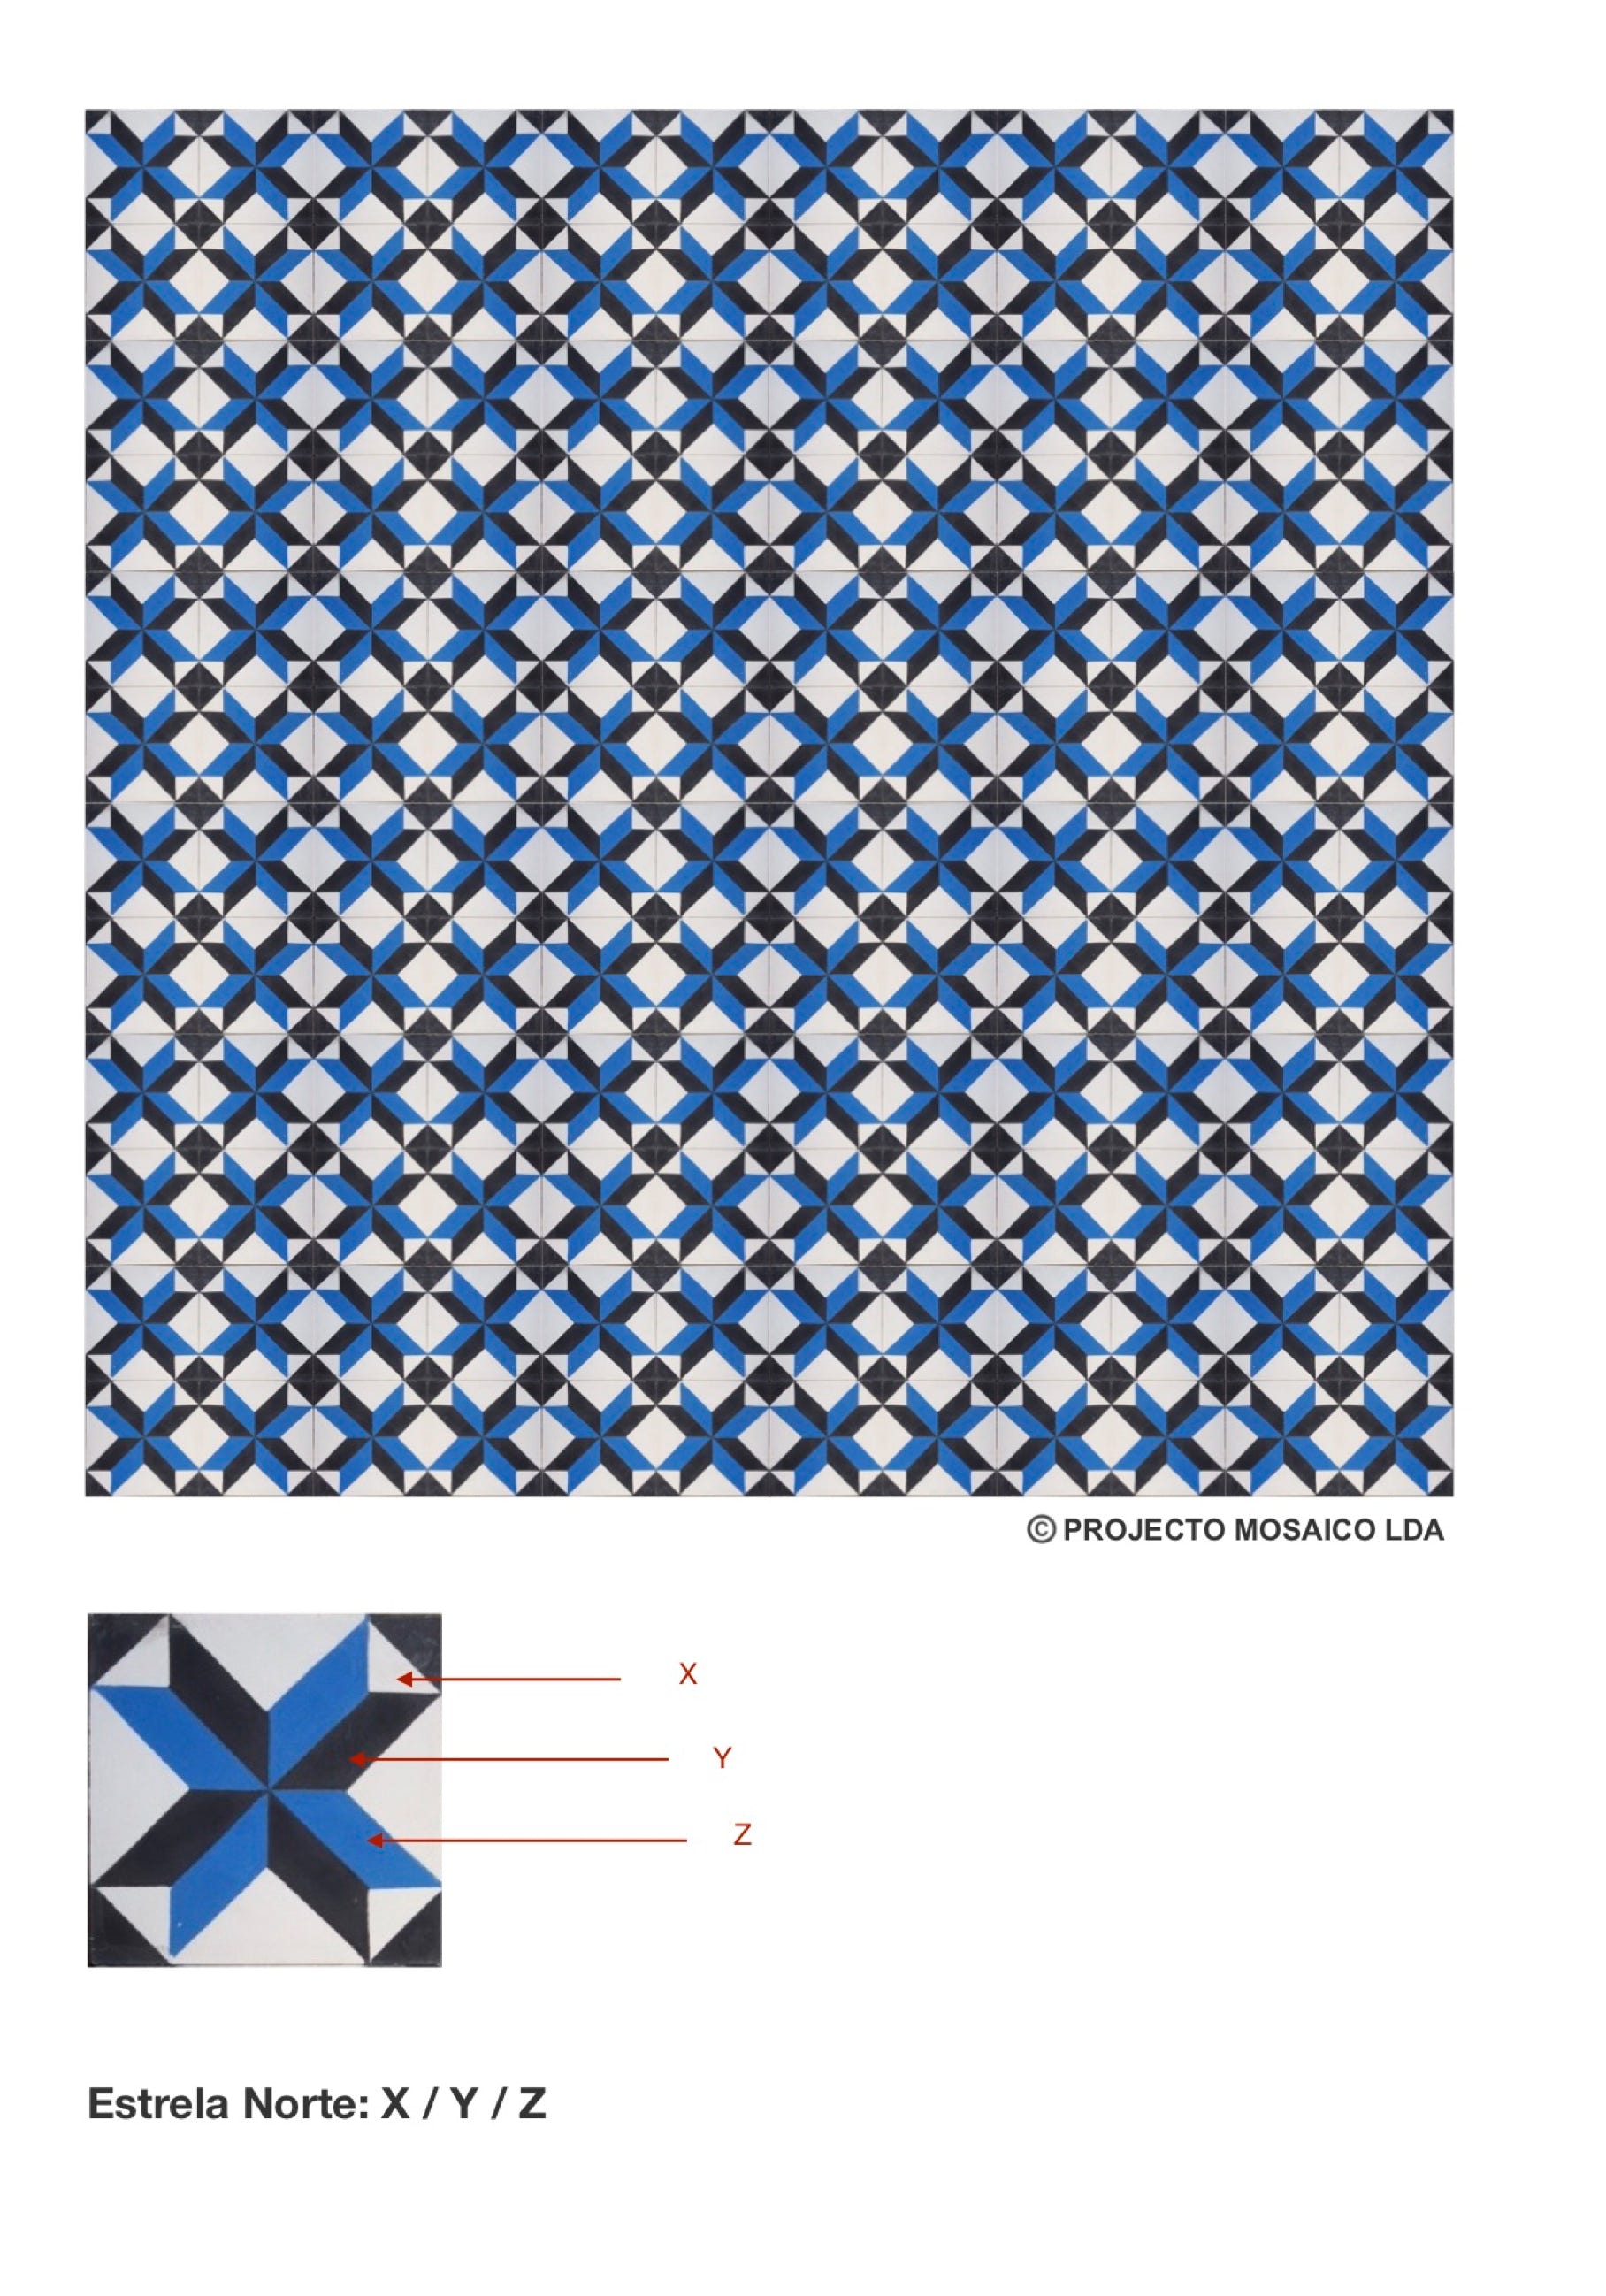 illustração de aplicação do mosaico hidráulico ref: Estrela Norte